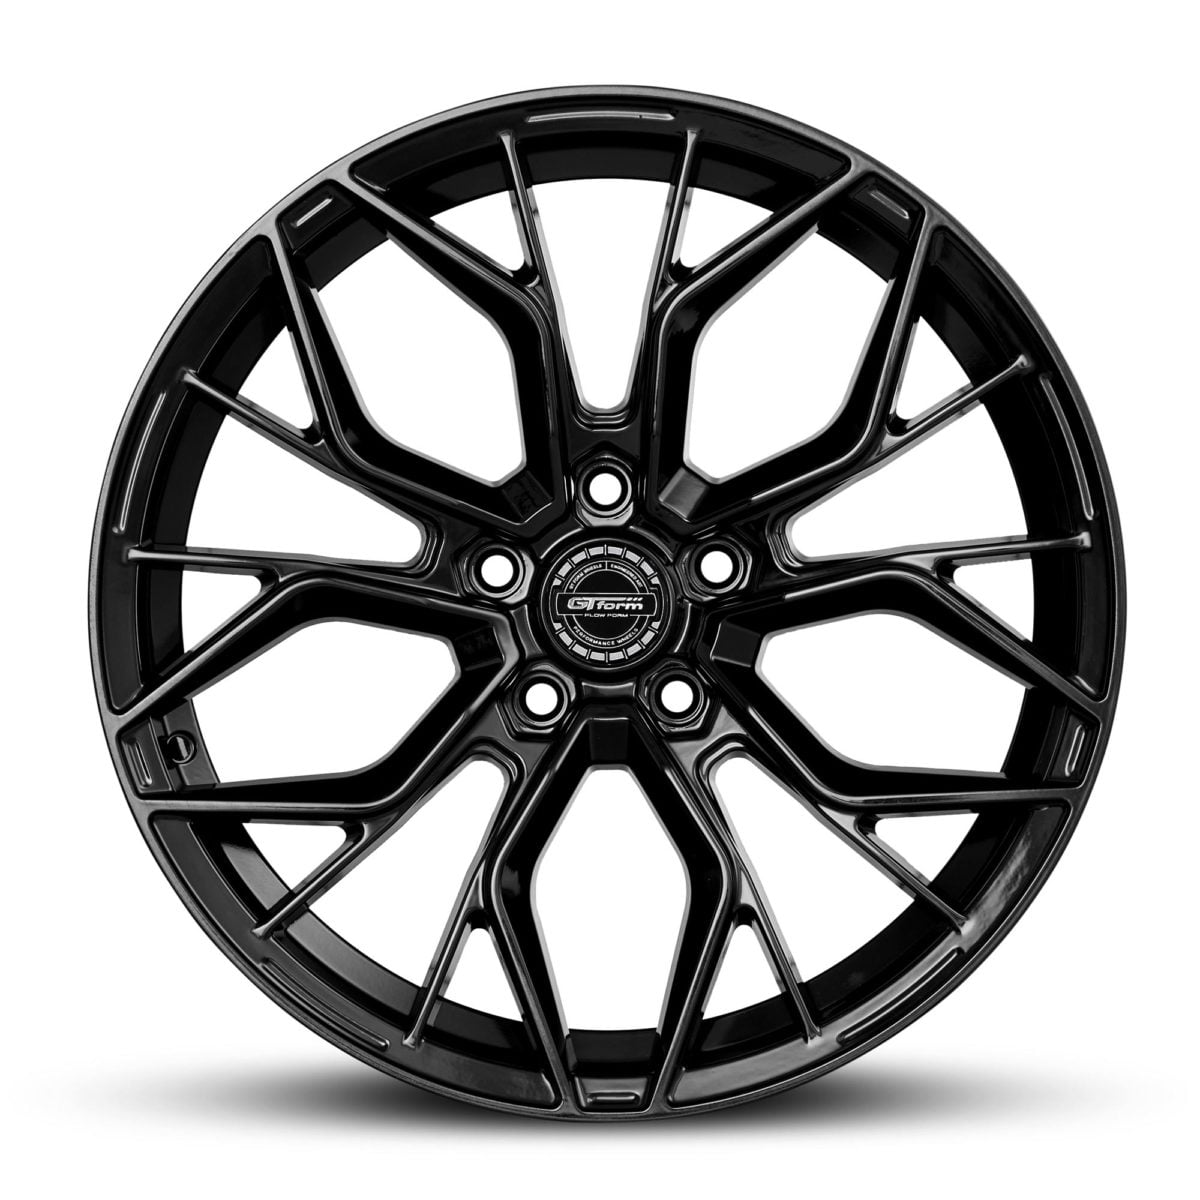 GT Form Marquee Gloss Black 18x8 Wheels Car Rims